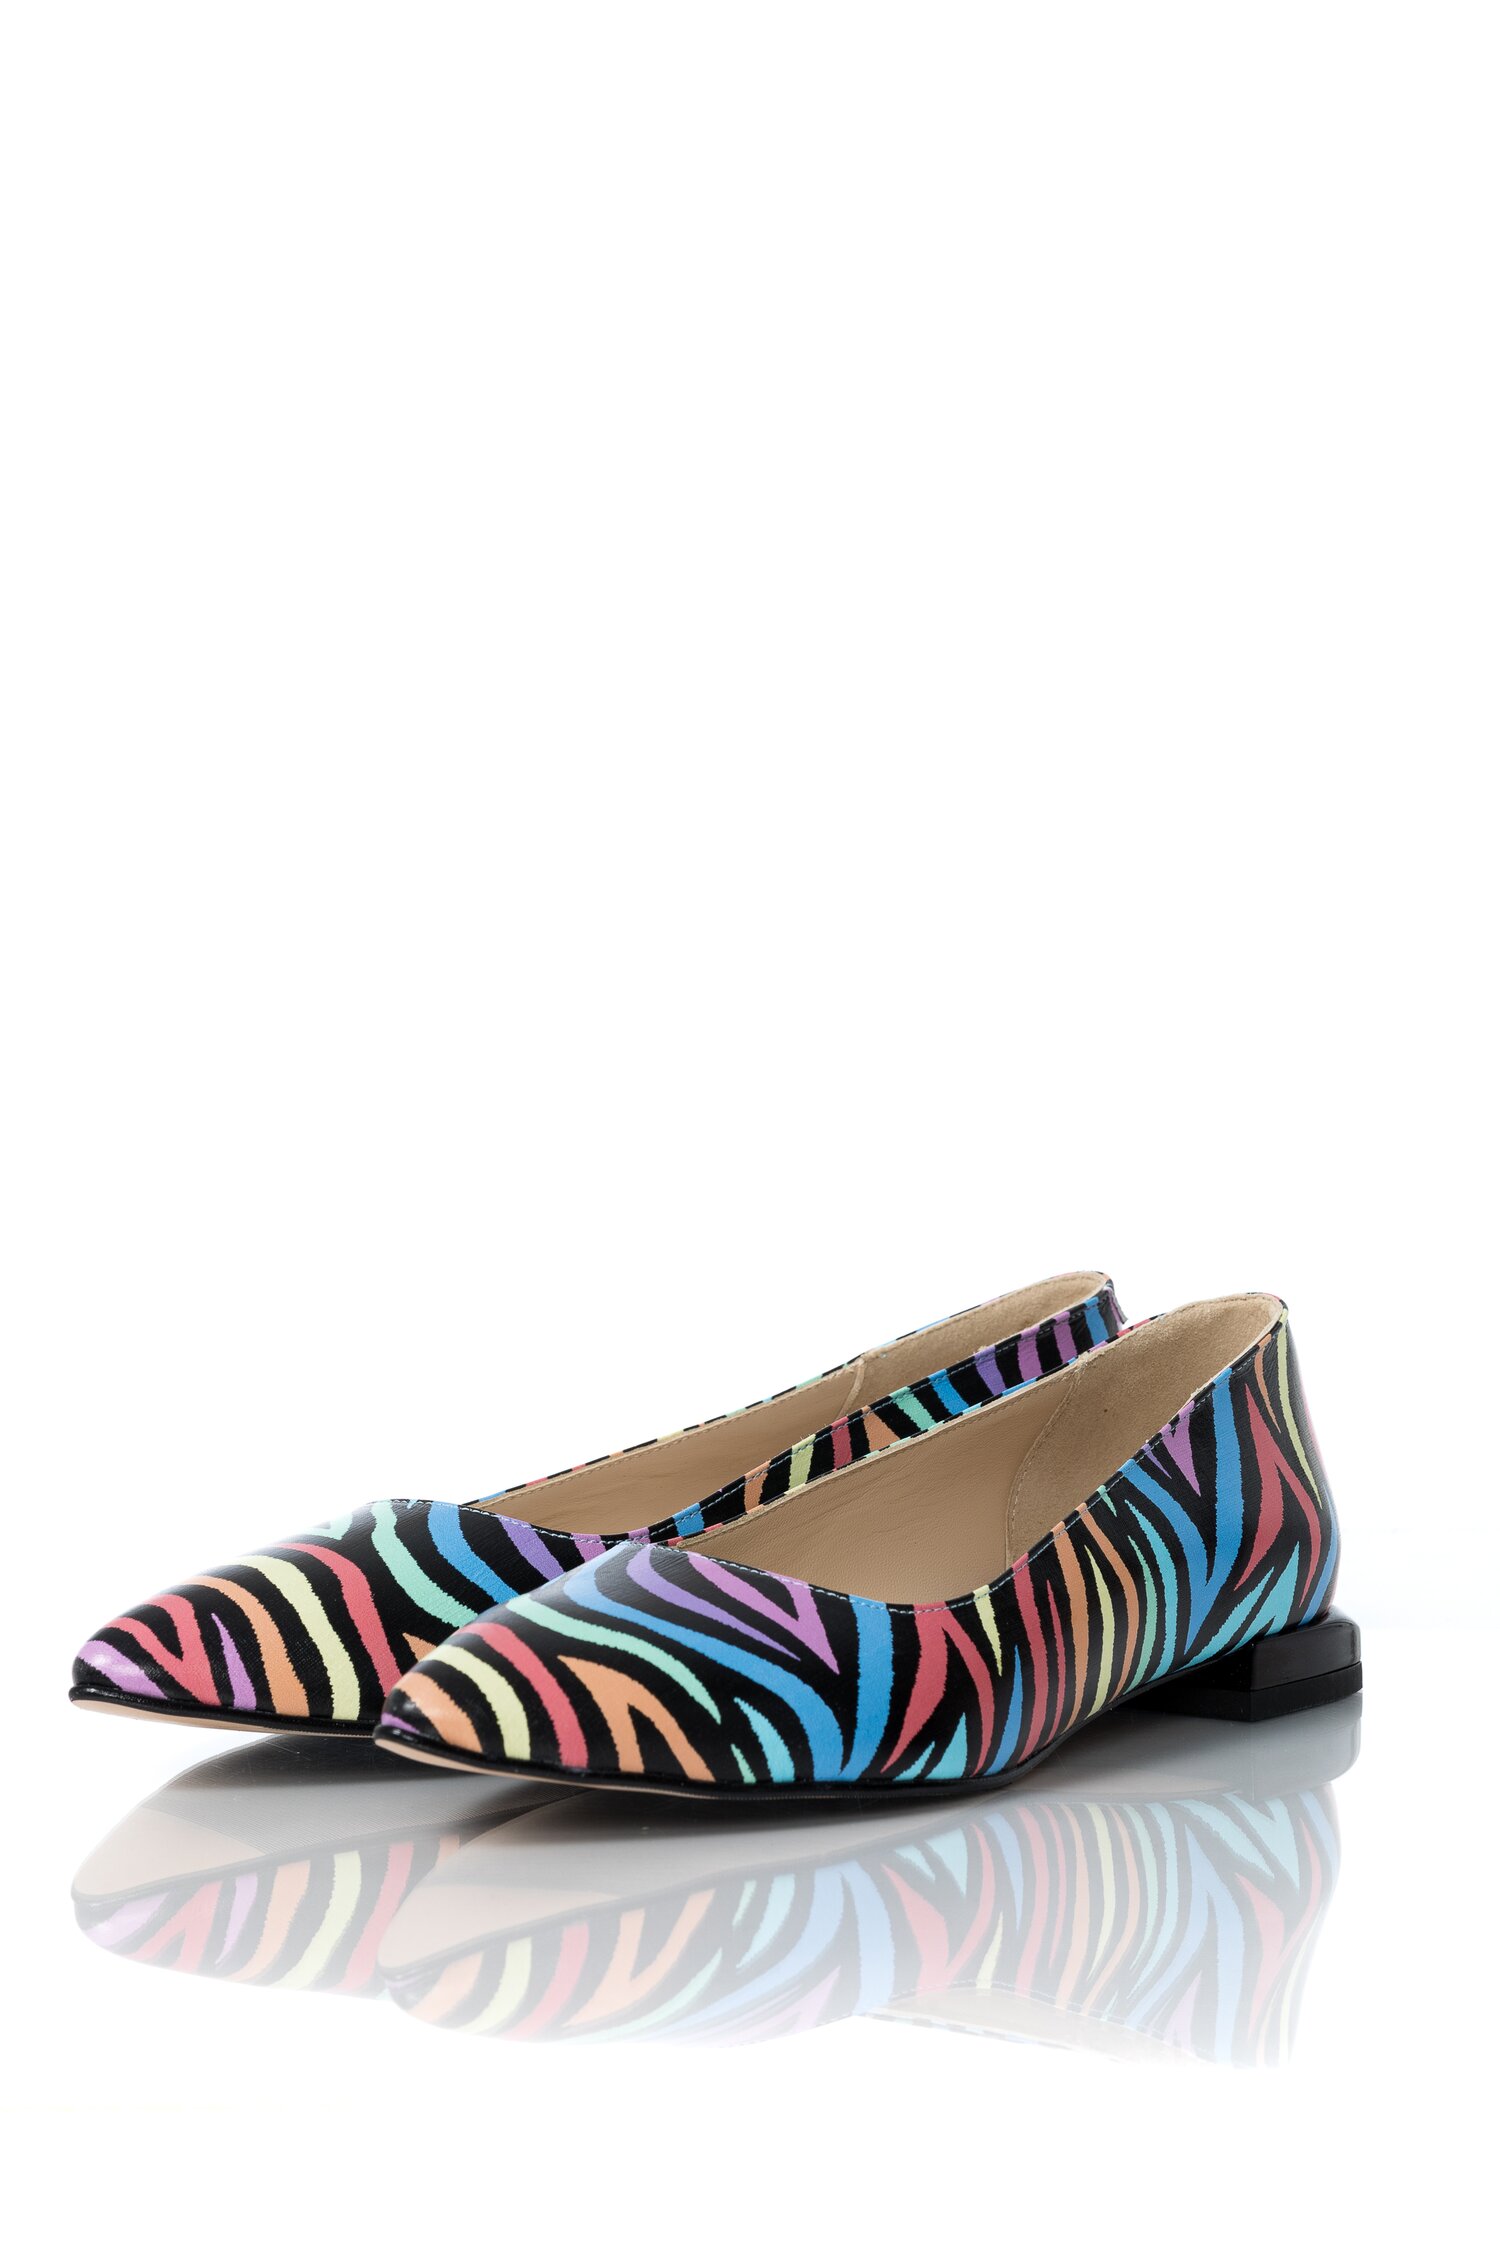 Pantofi Anda fara toc cu imprimeu multicolor dyfashion.ro imagine 2022 13clothing.ro